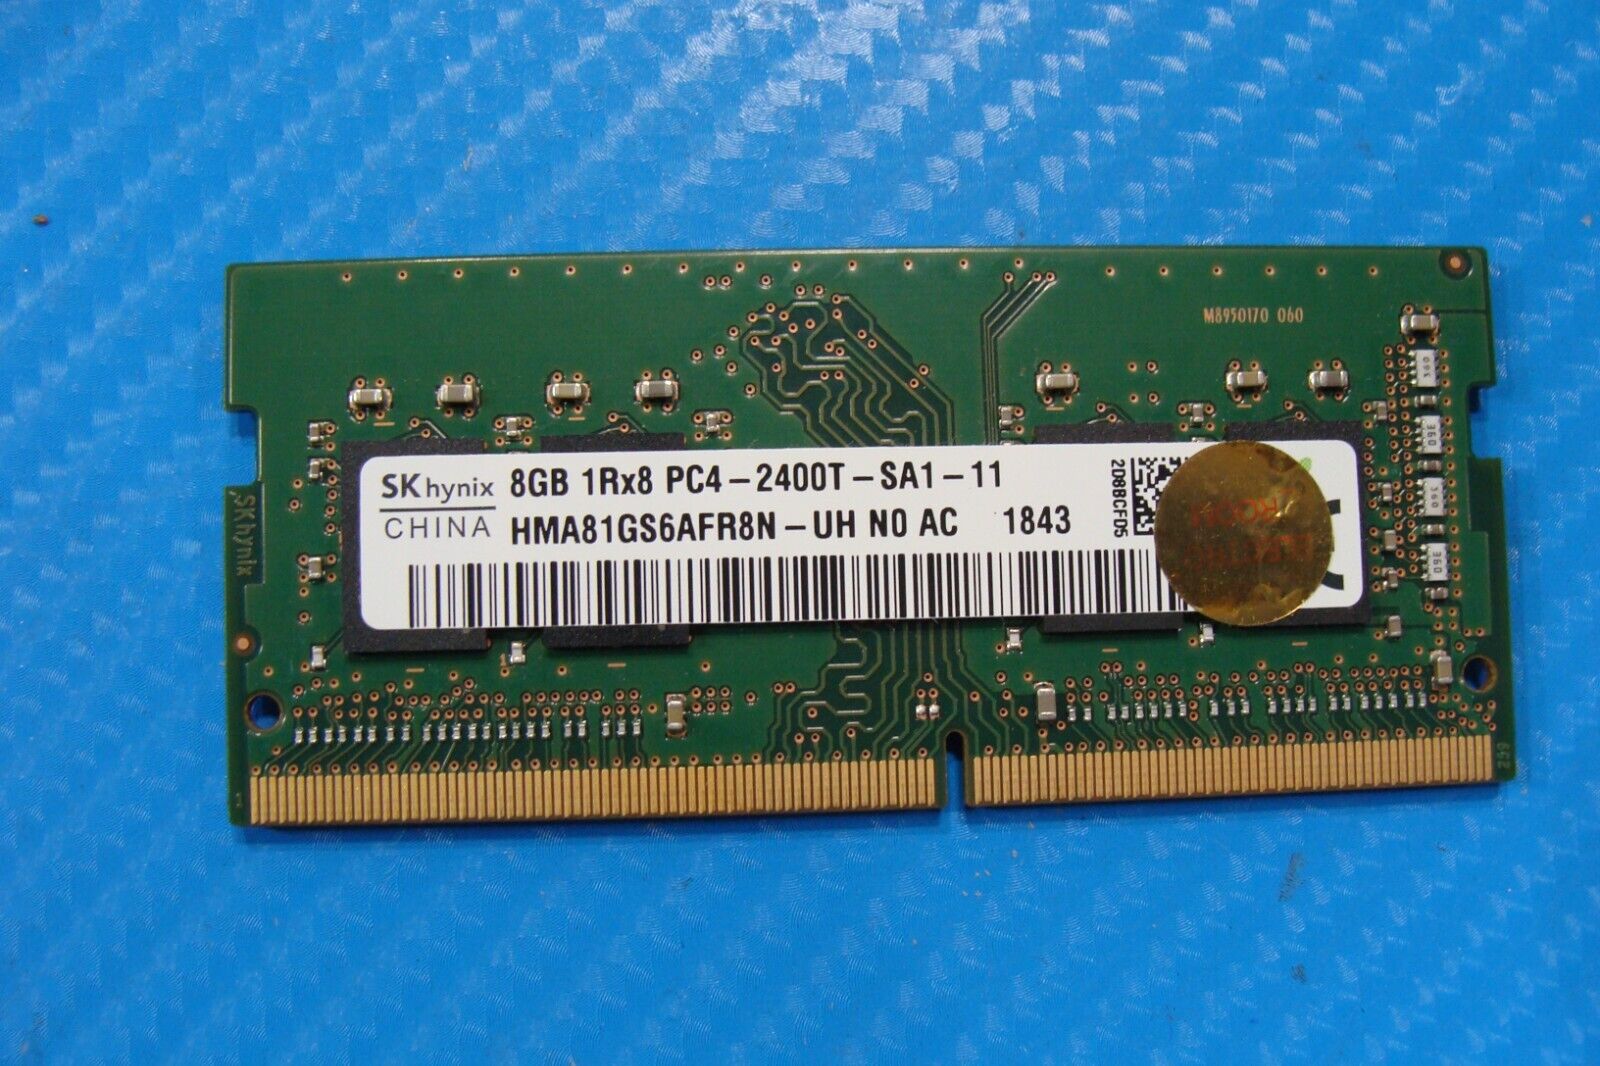 Dell 5590 SK Hynix 8GB 1Rx8 PC4-2400T Memory RAM SO-DIMM HMA81GS6AFR8N-UH